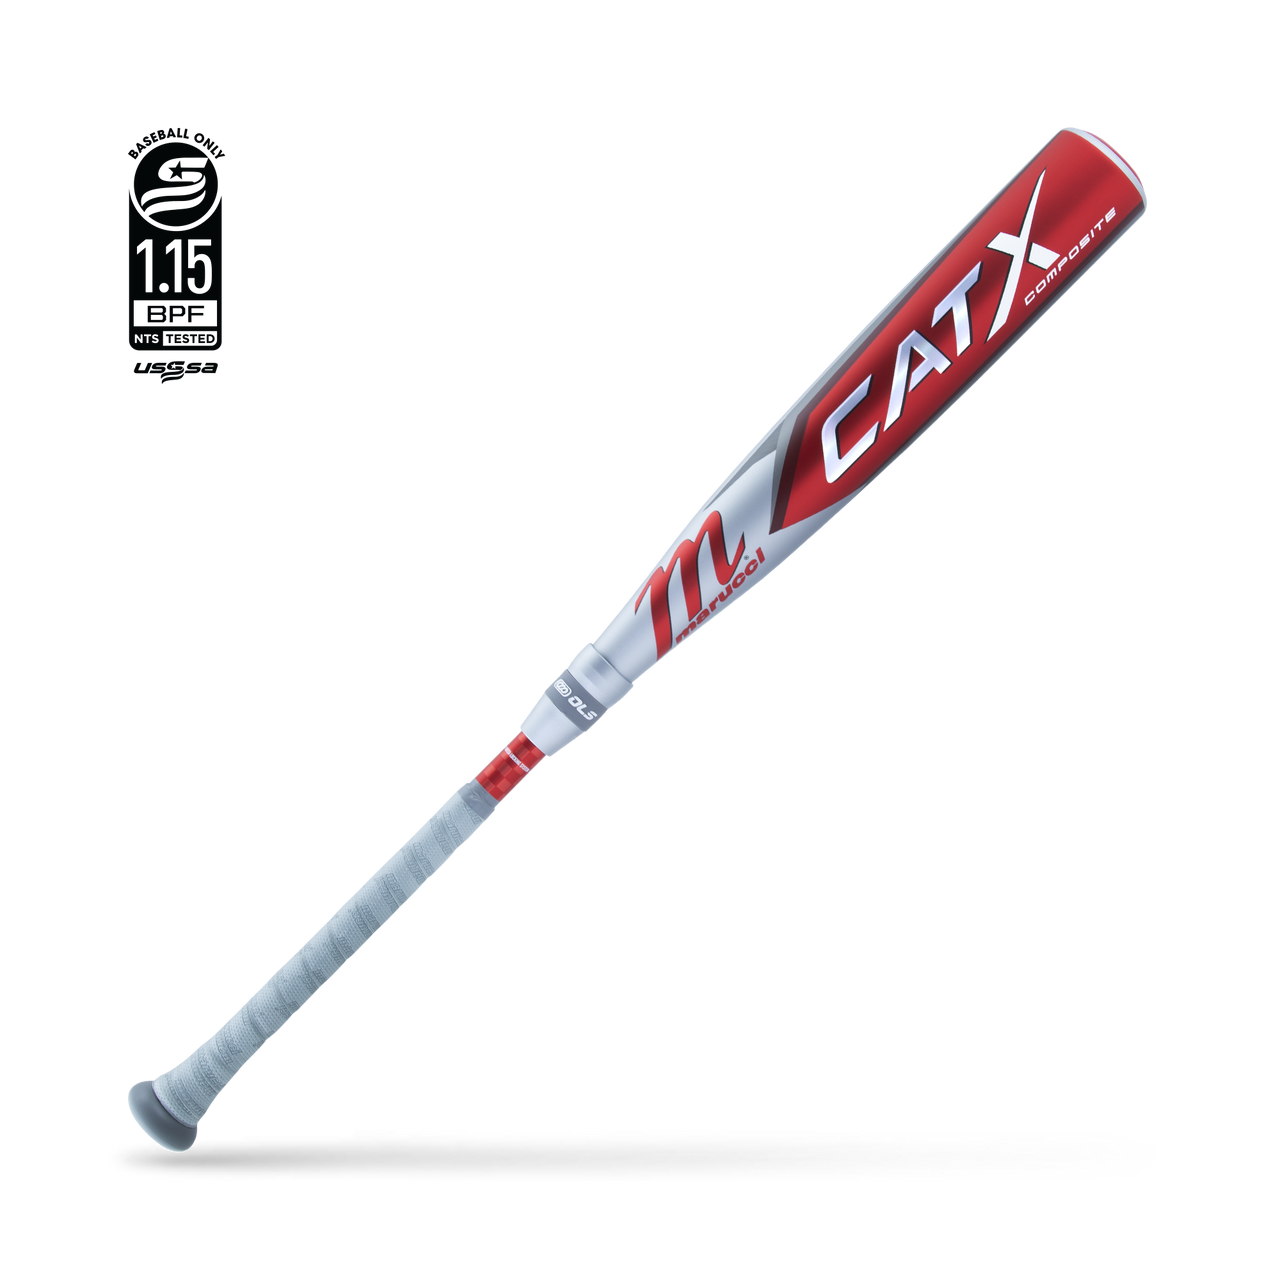 Marucci CATX COMPOSITE SL (-10) Baseball Bat (MSBCCPX10)